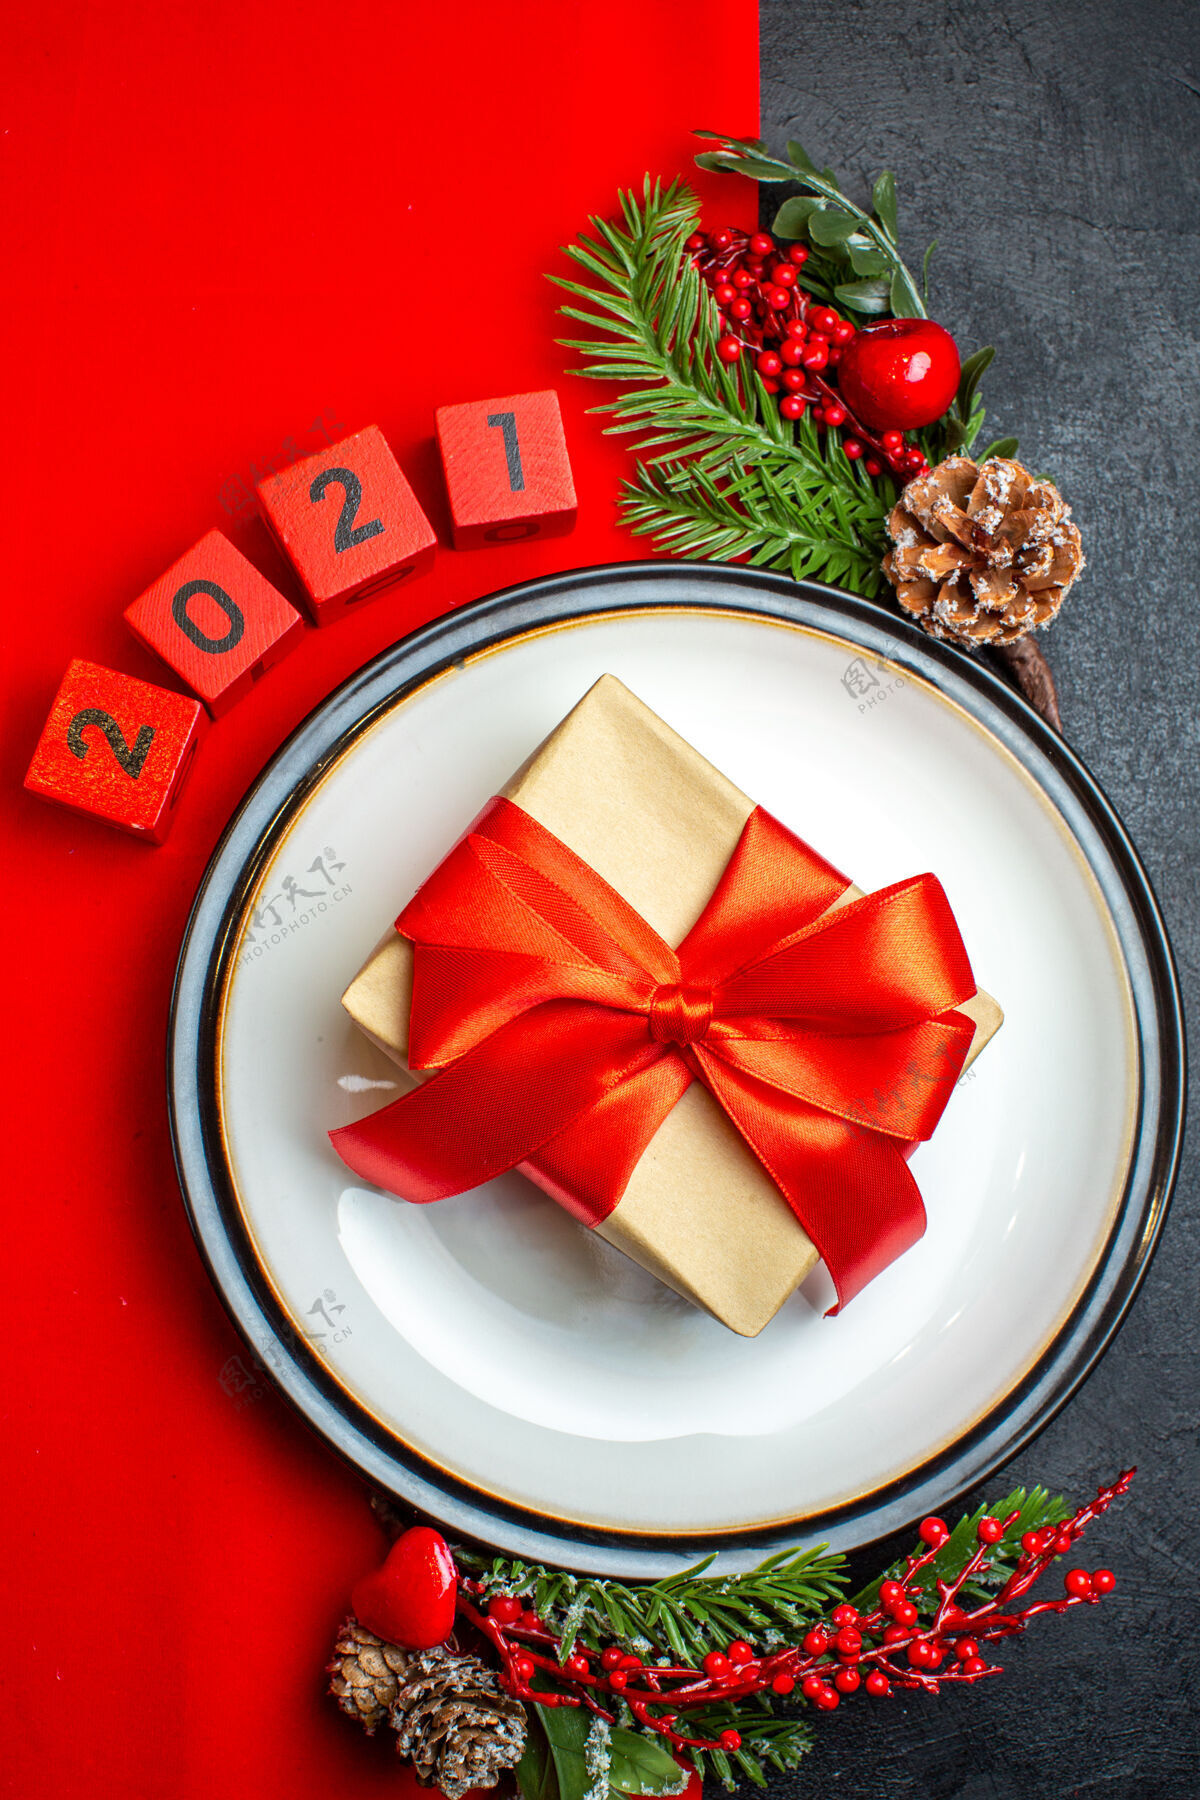 餐盘新年背景用漂亮的礼品装饰在一个餐盘上 配件杉木枝和数字放在一张红色餐巾上 黑色的桌子上俯视树枝风景冷杉